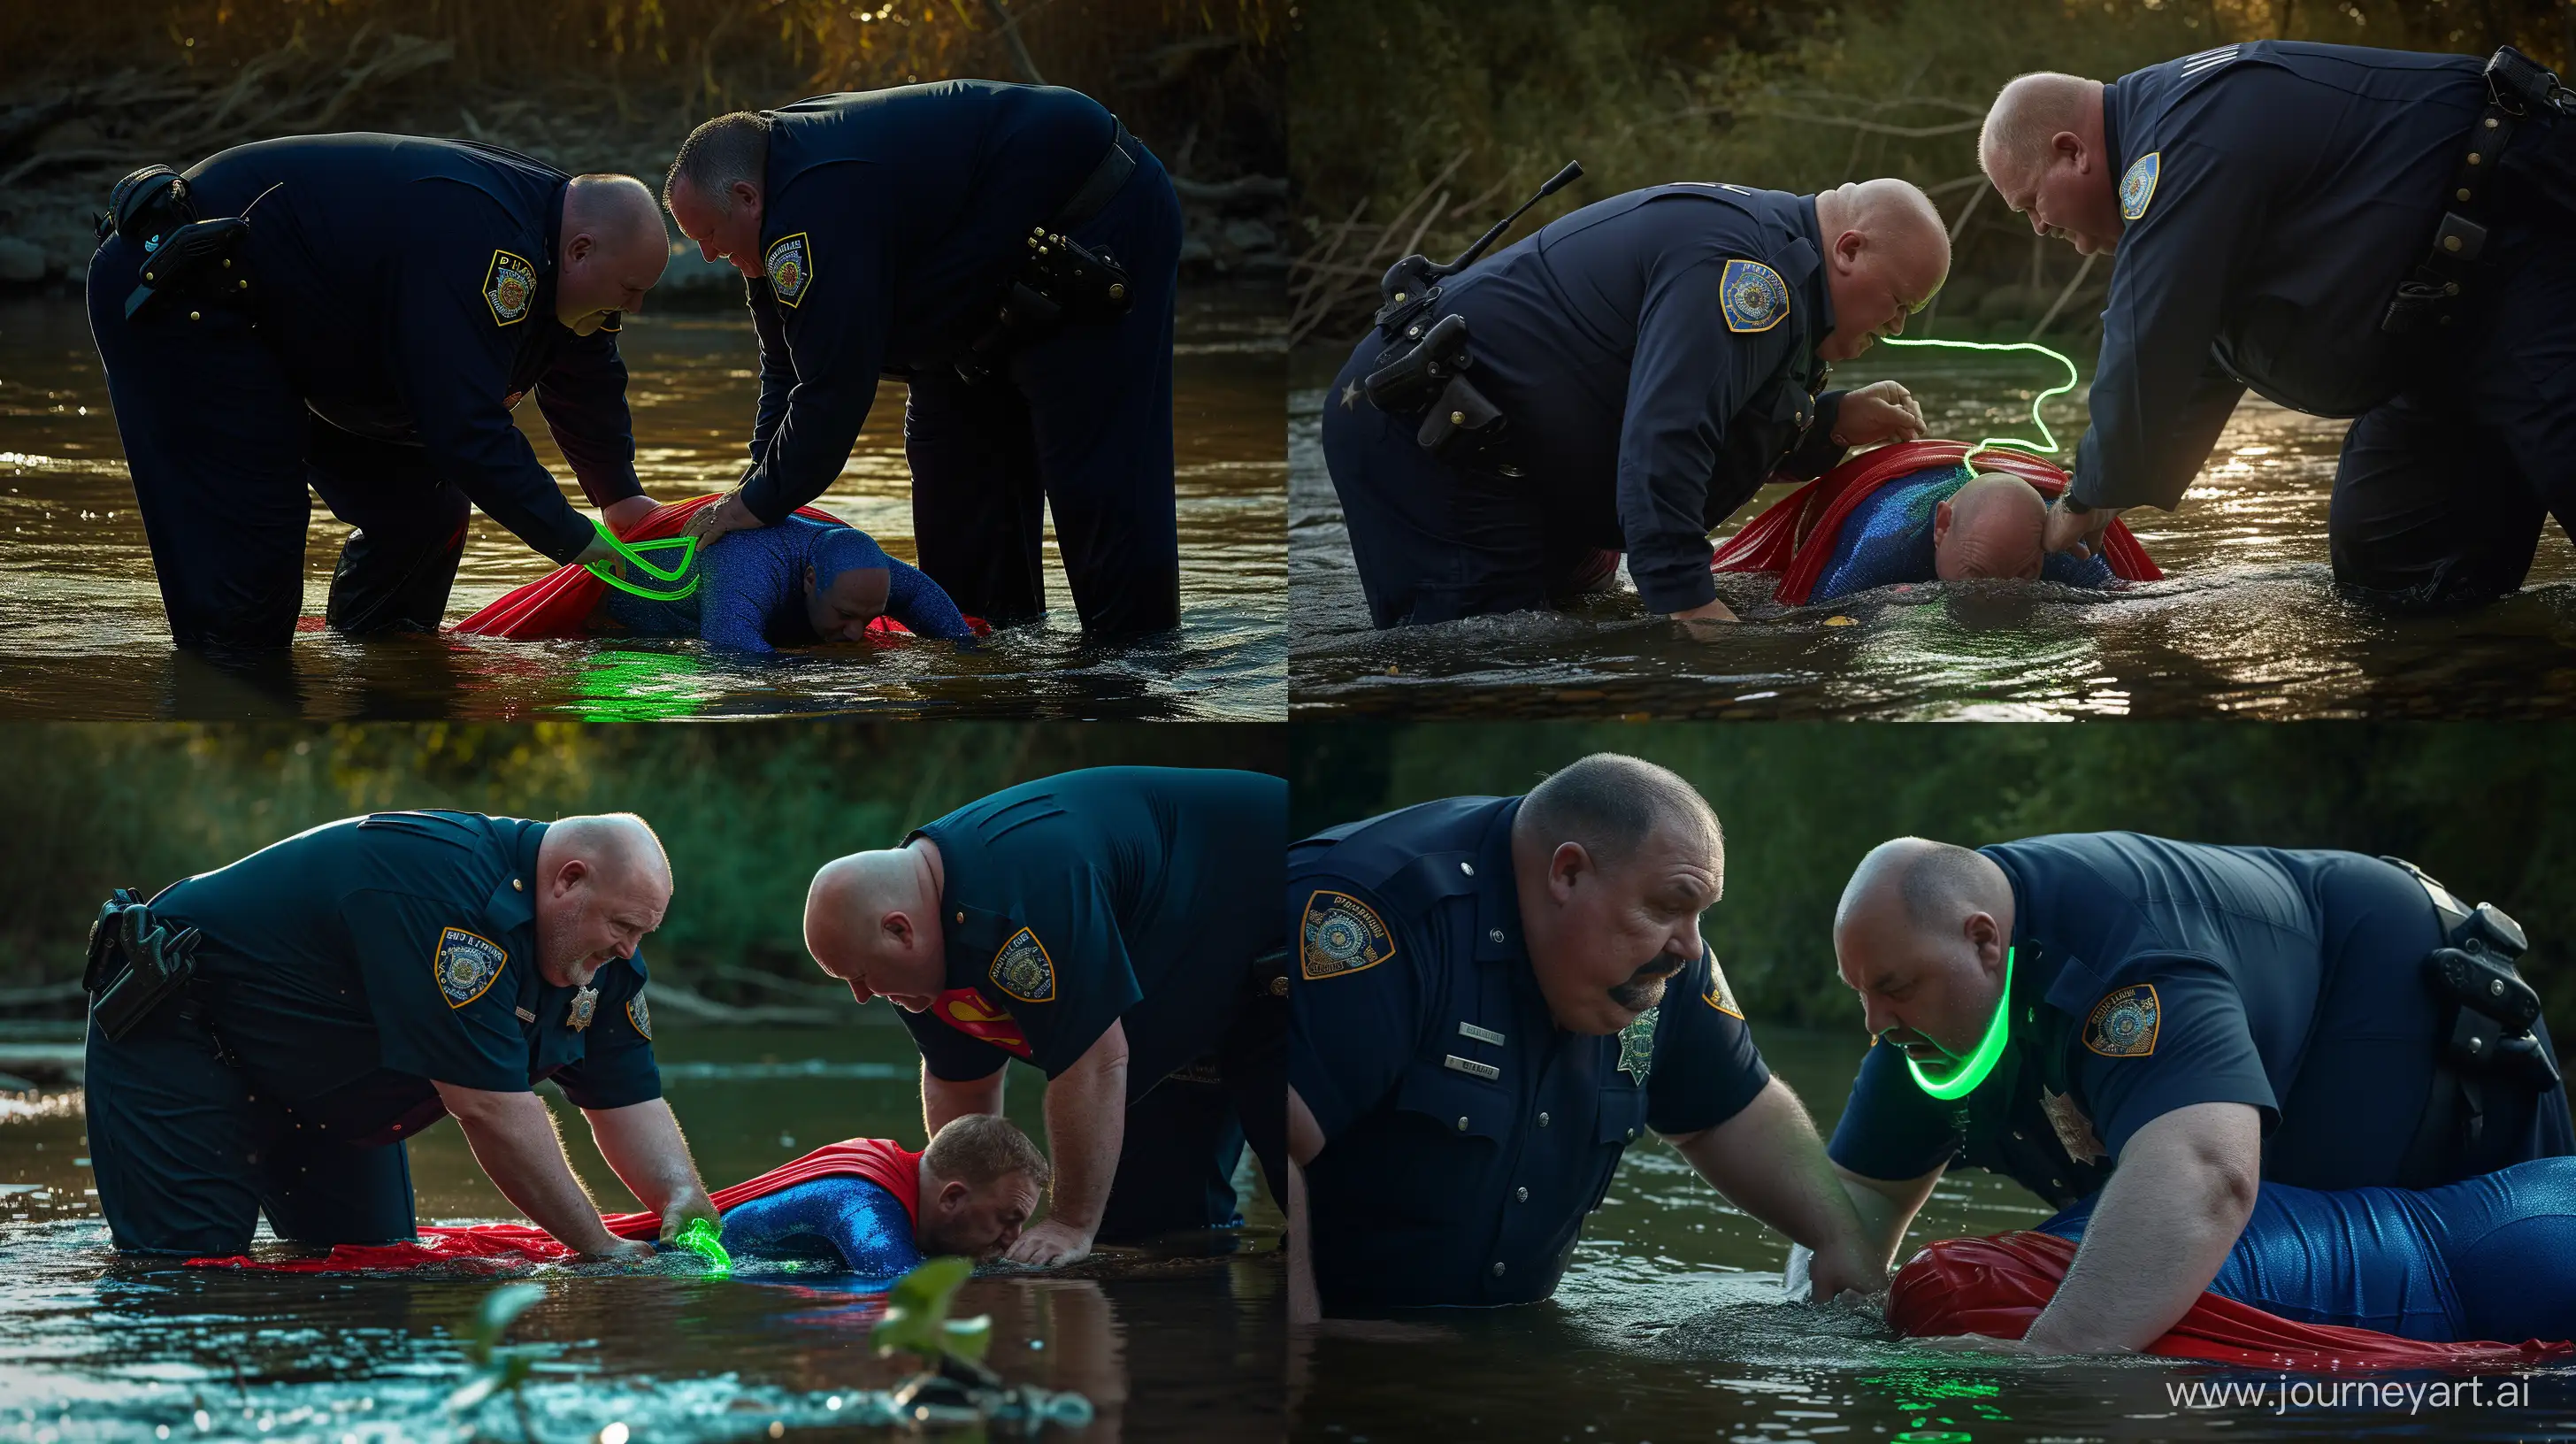 Eccentric-River-Scene-Elderly-Men-in-Police-and-Superman-Attire-with-Neon-Collar